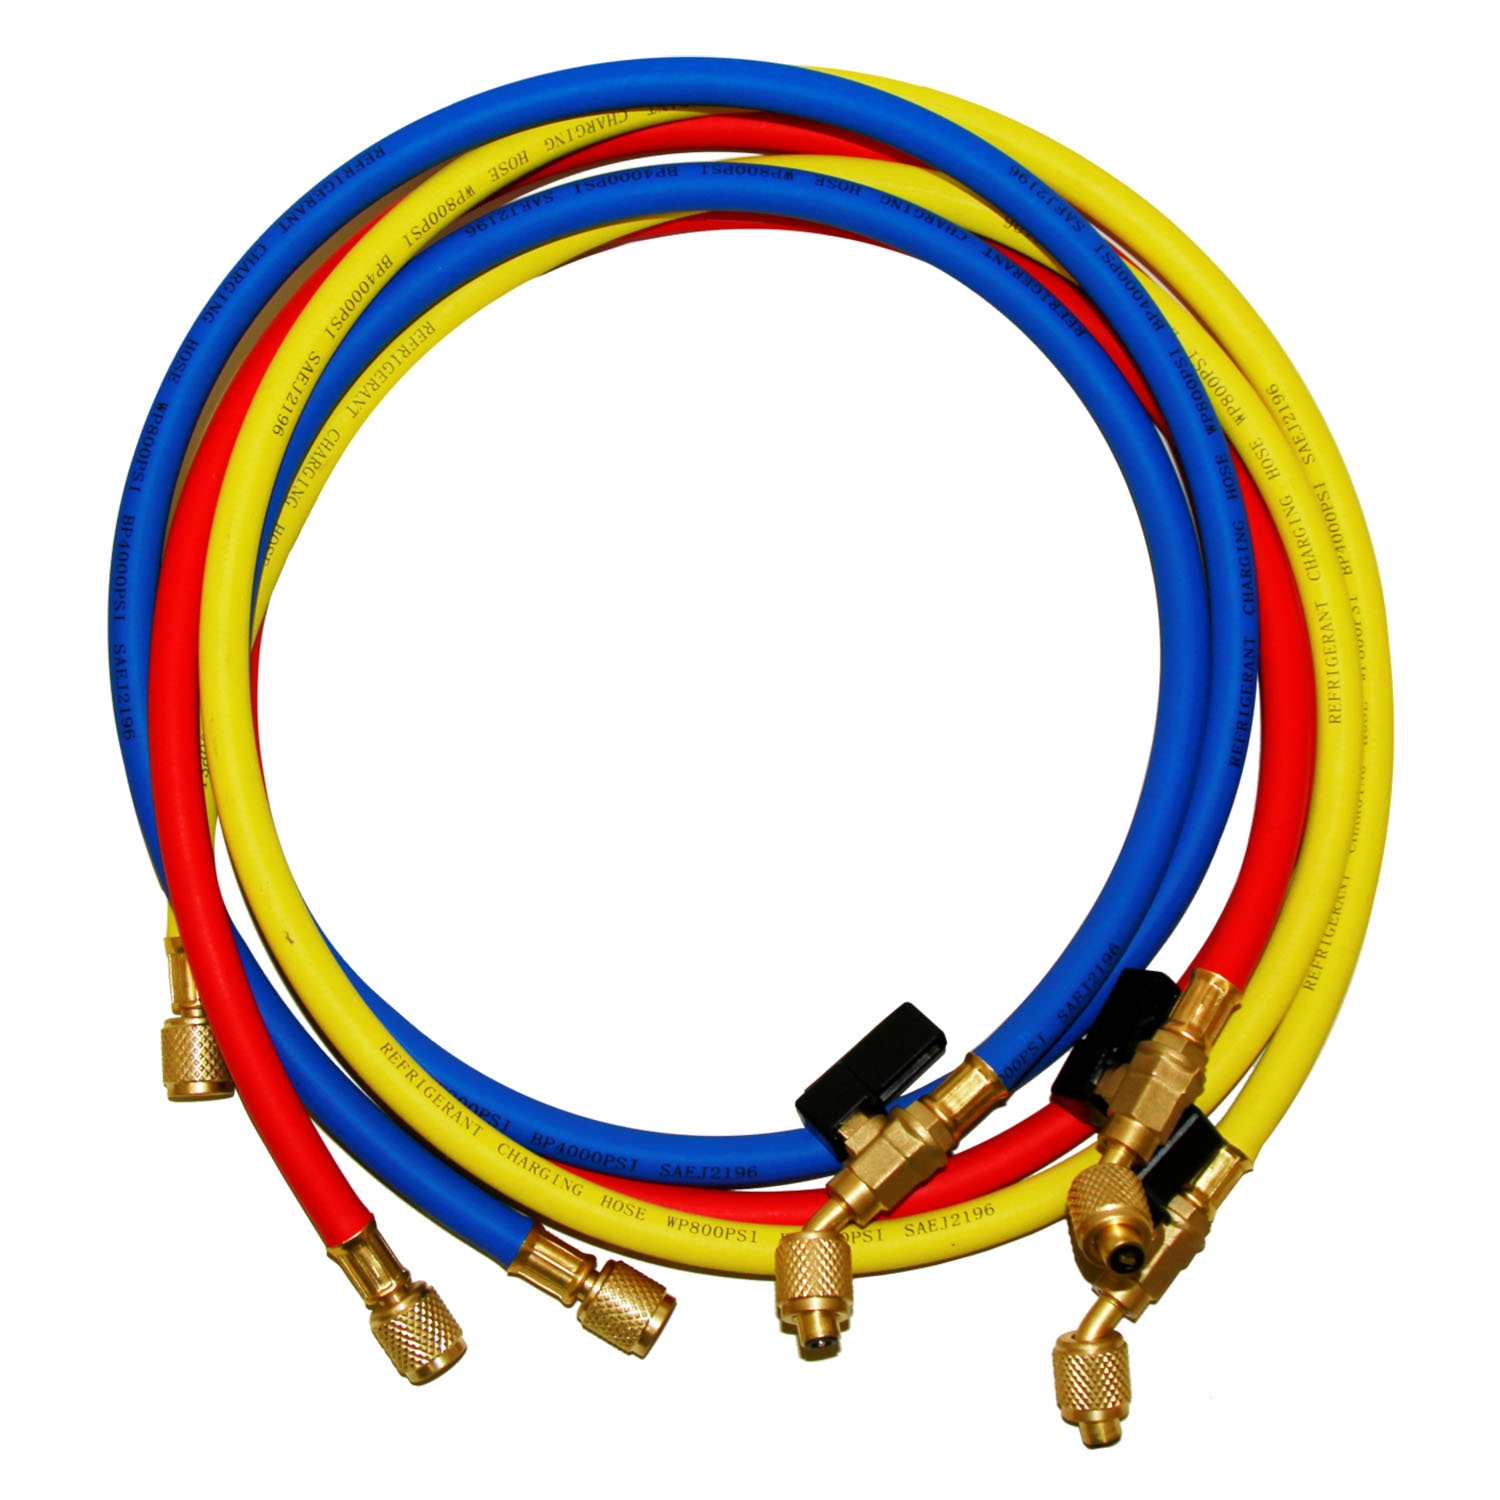 Kit n° 3 tubi di carica (rosso + giallo + blu) - lunghezza 150 cm. - con valvola lato 45° - attacchi 1/4 SAE su entrambi i lati, con valvola a sfera e depressore